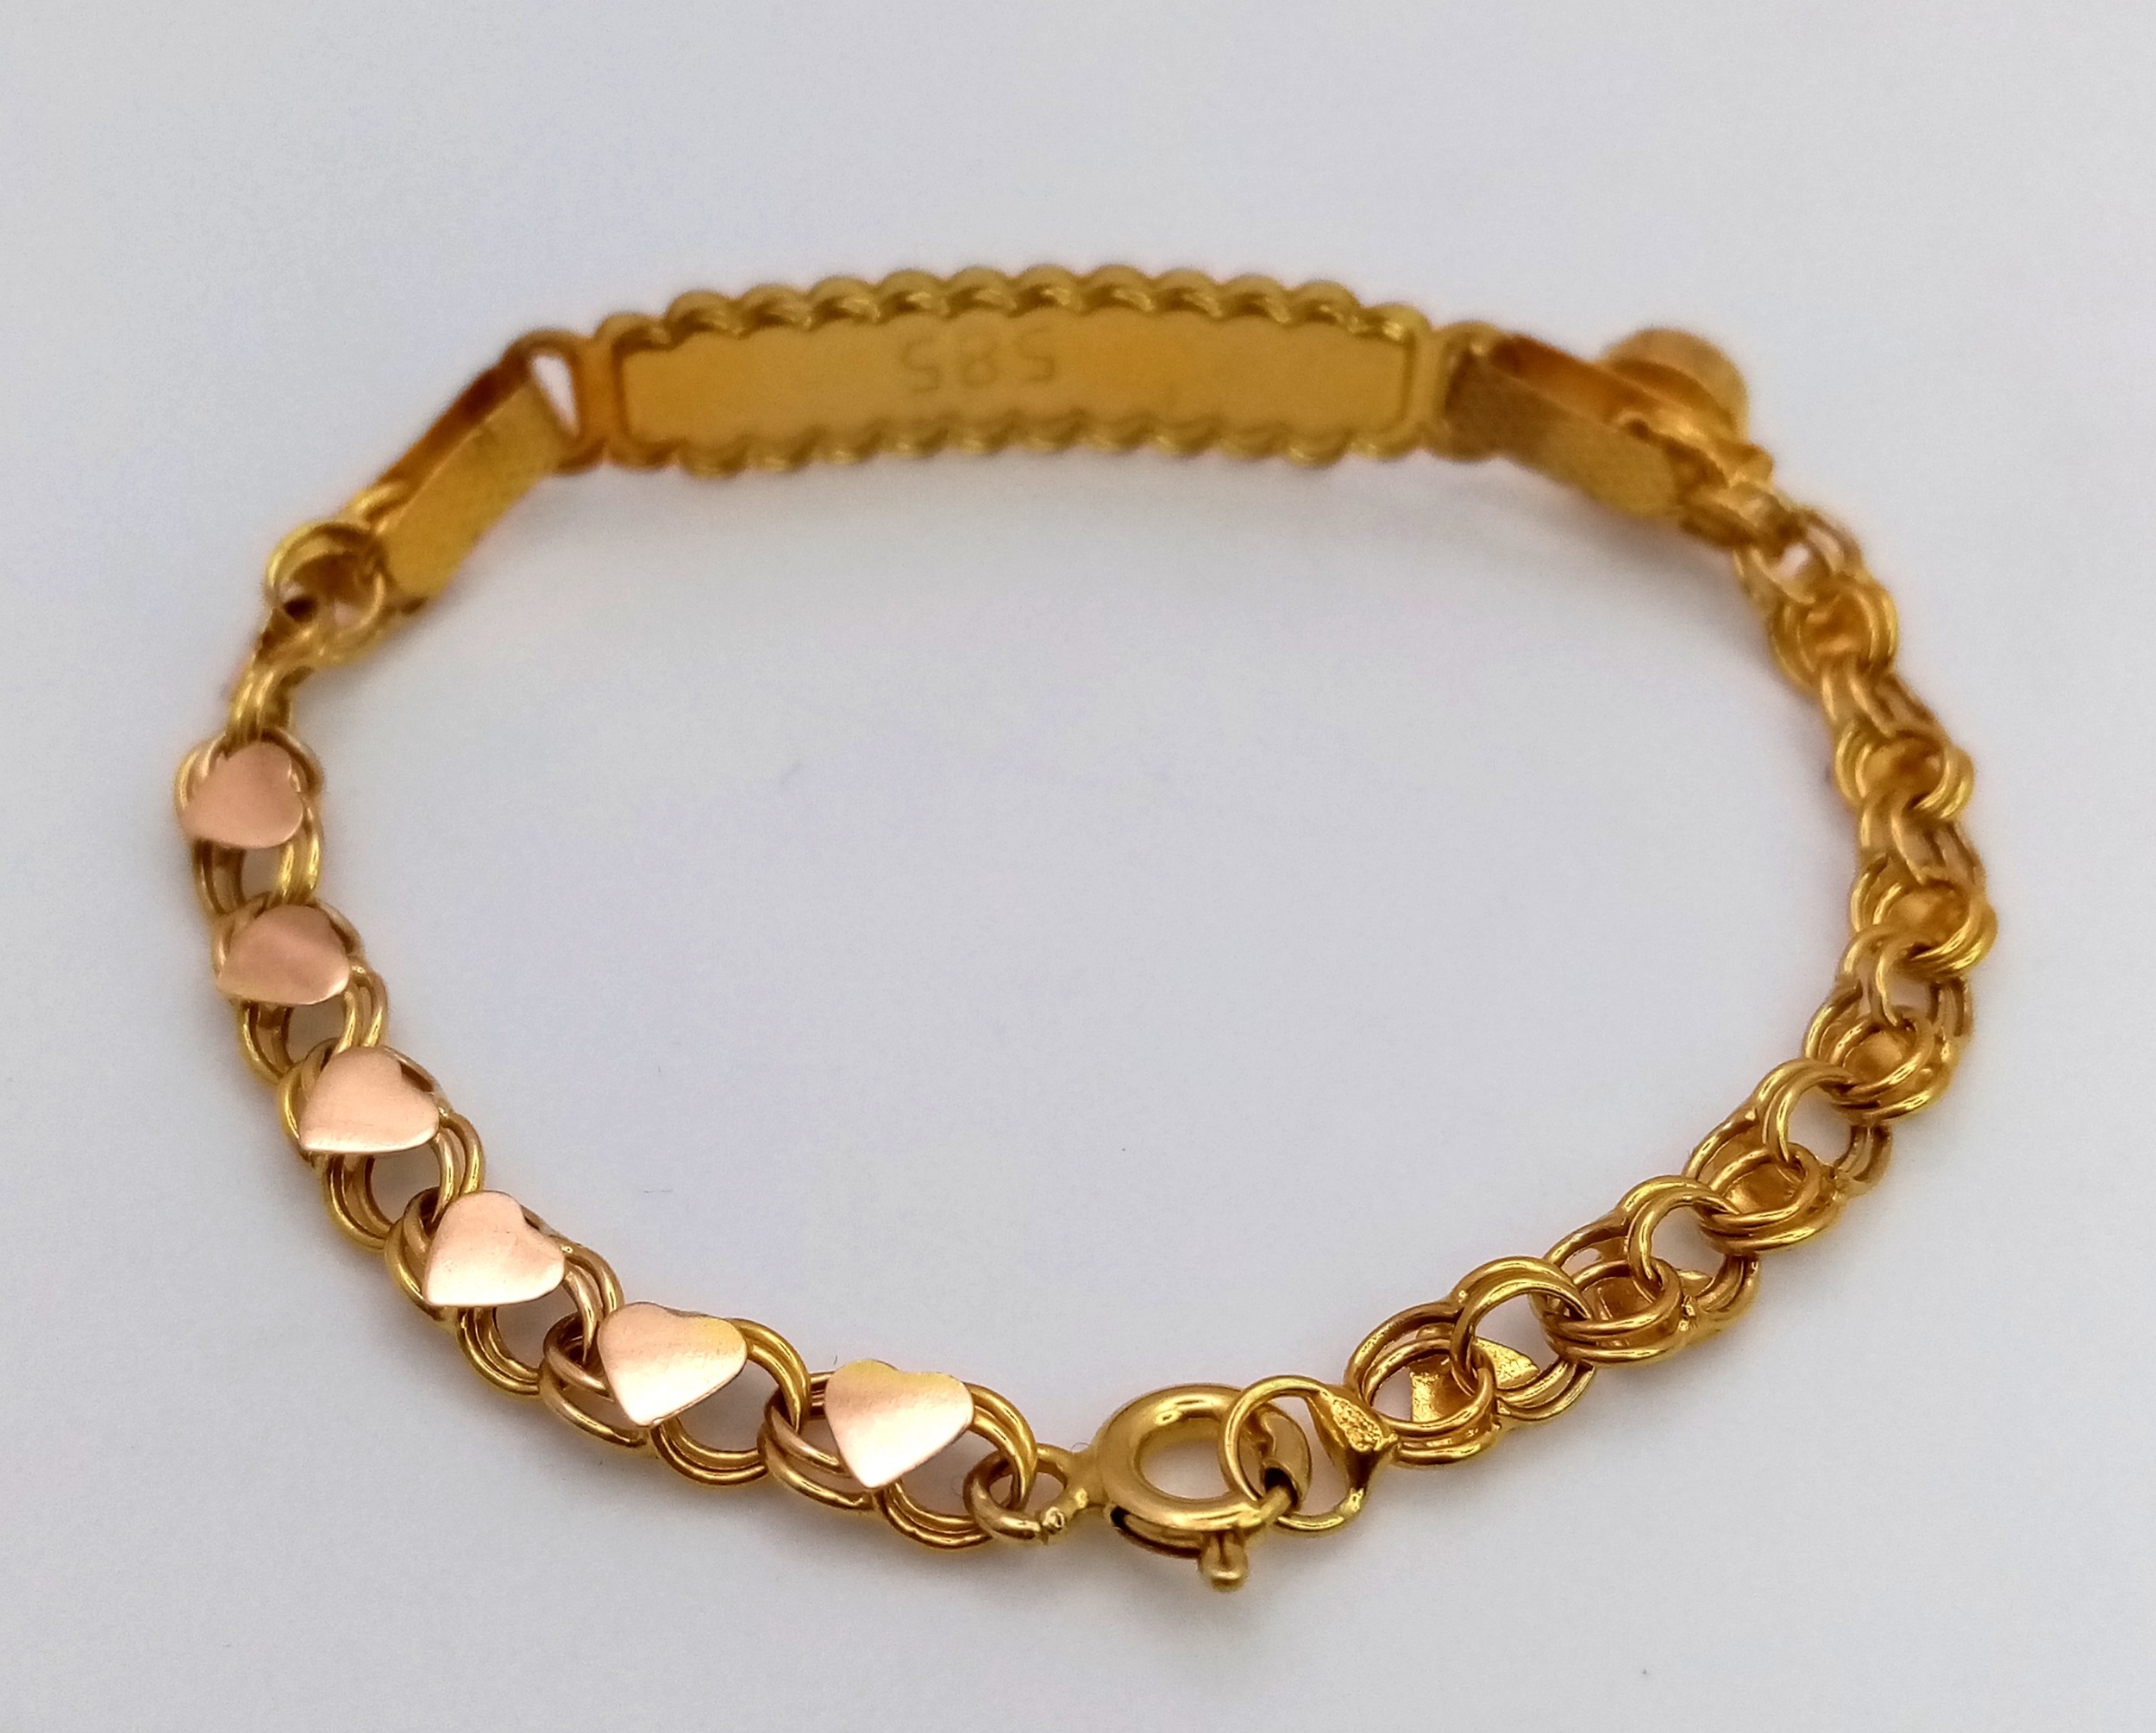 A Babies 14K Gold Identity Bracelet. 12cm. 1.6g - Image 4 of 5